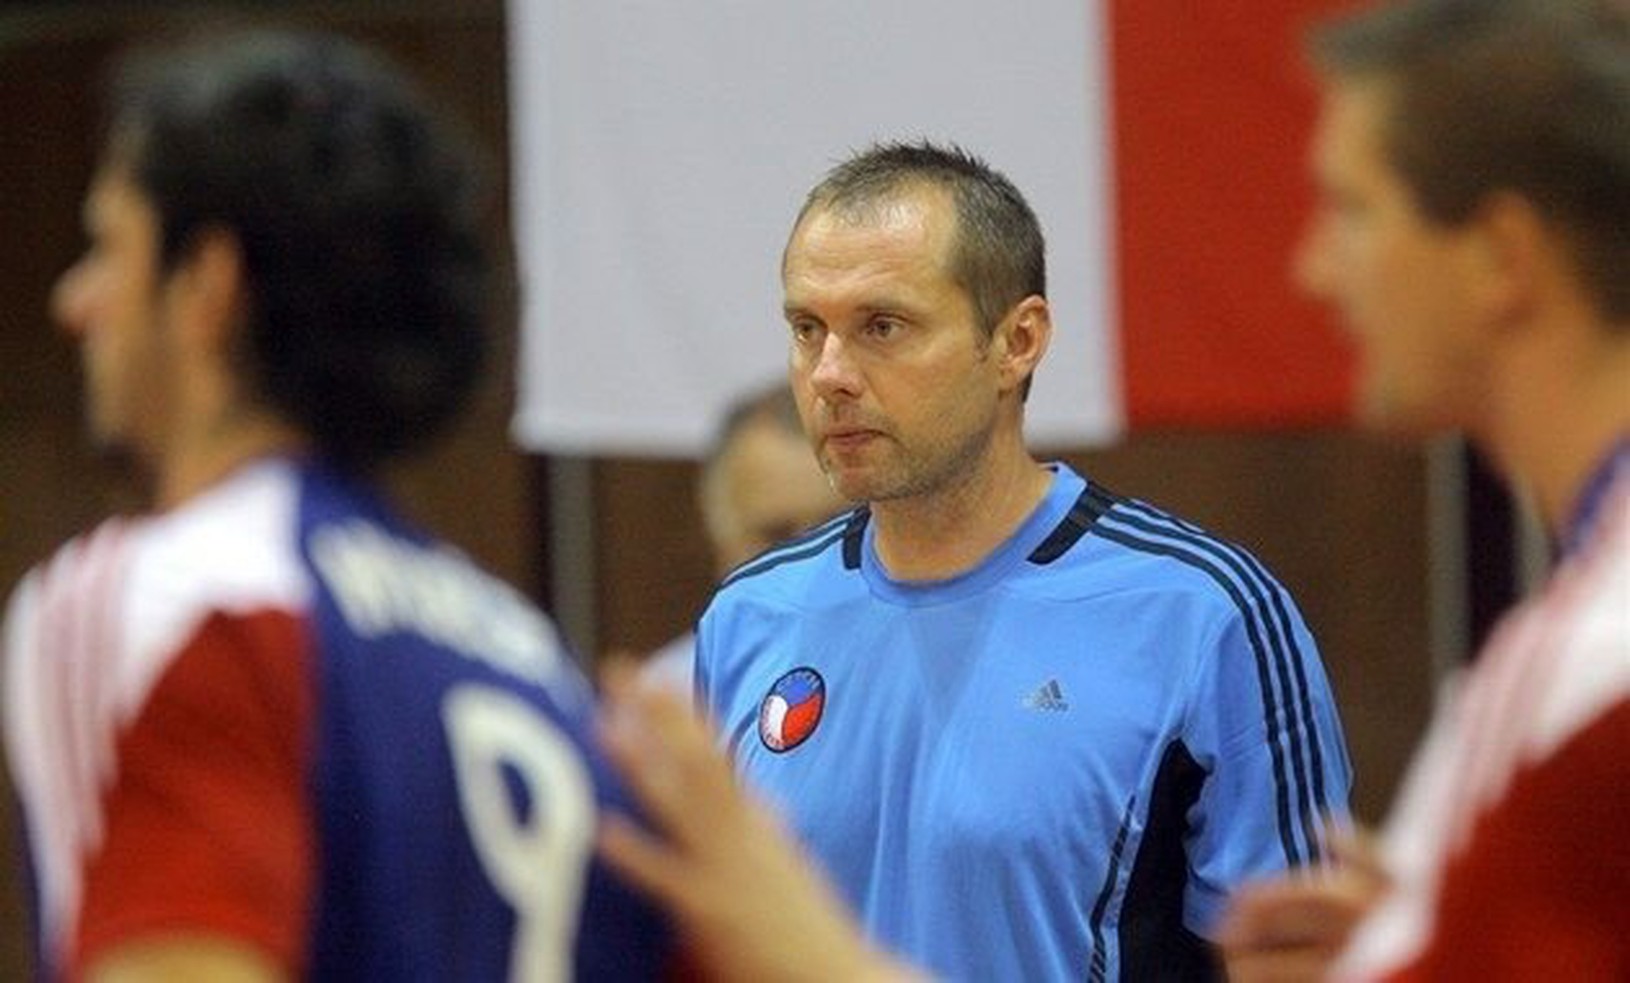 Jan Svoboda